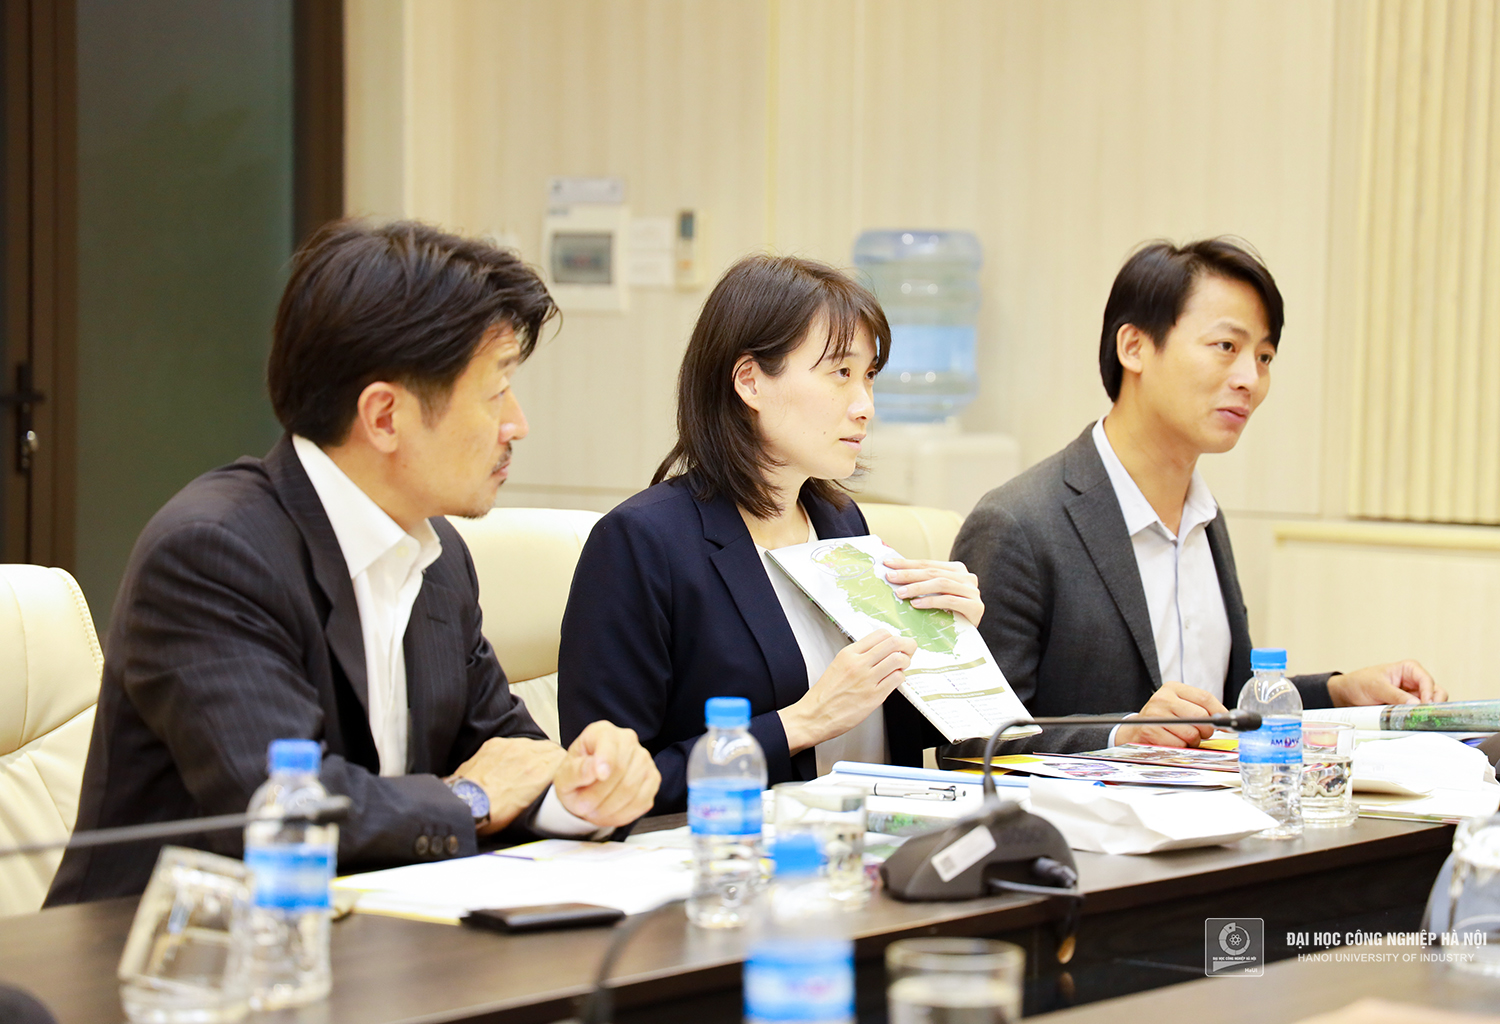 Đại học Công nghiệp Hà Nội tiếp đoàn công tác chính quyền tỉnh Wakayama - Nhật Bản